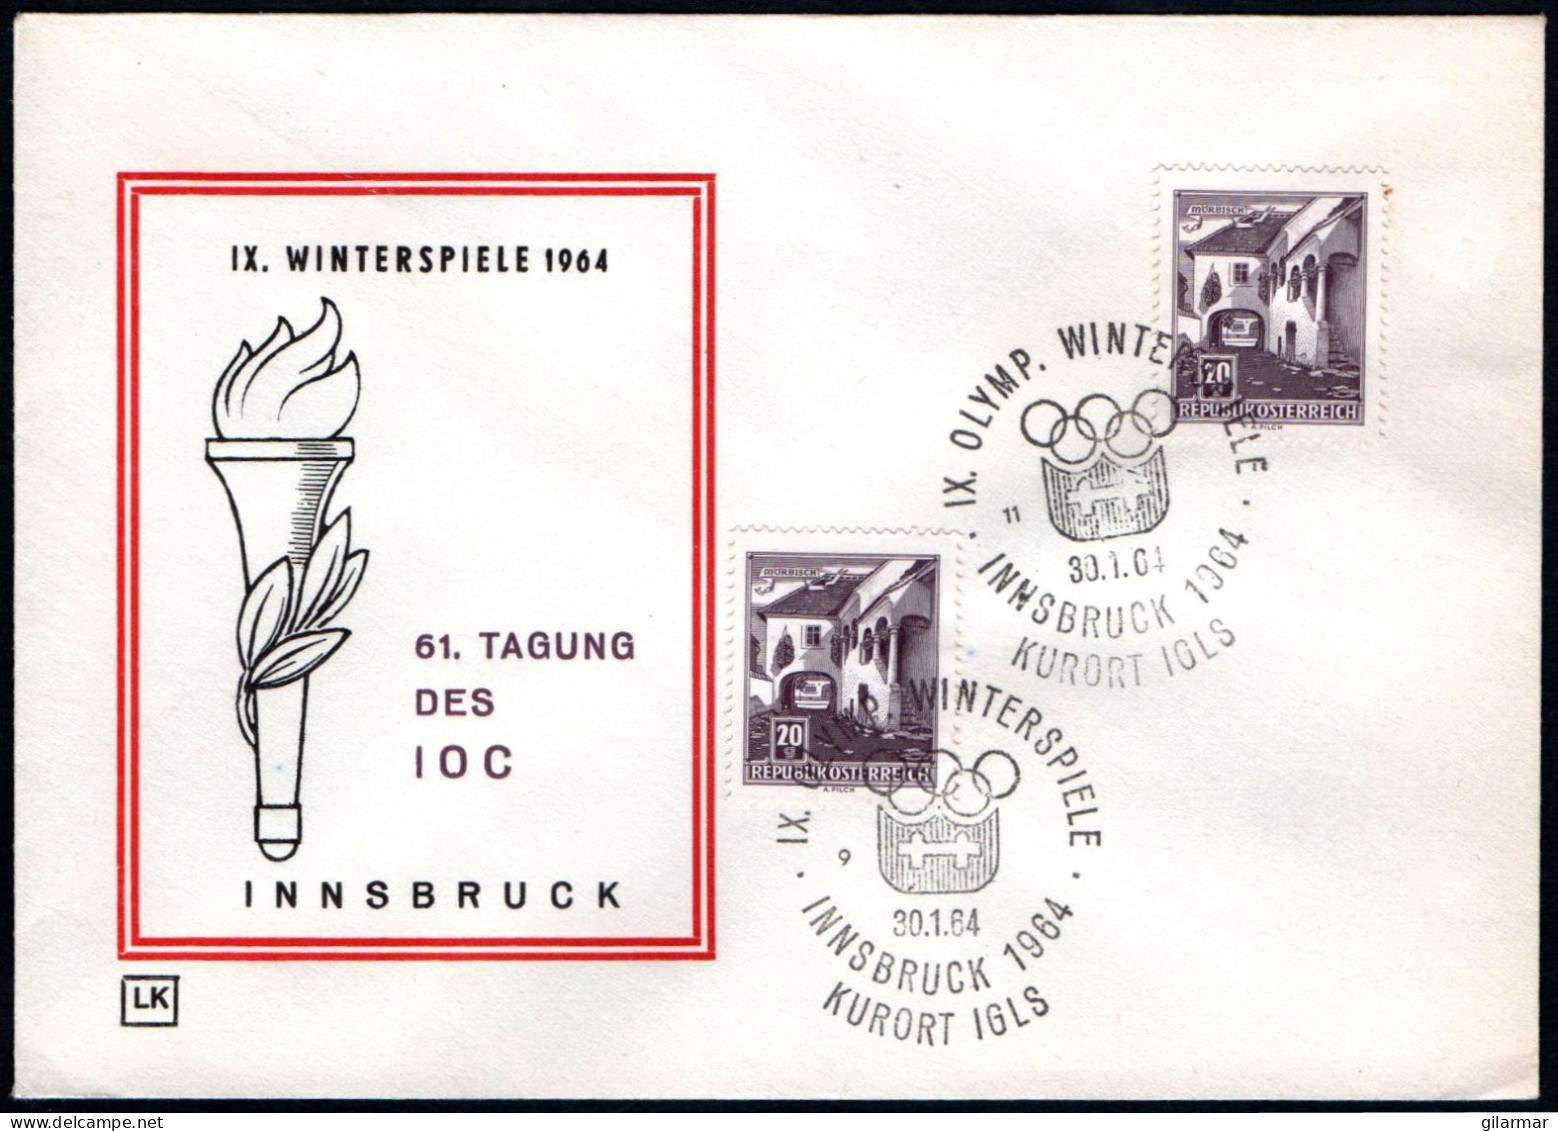 AUSTRIA KURORT IGLS 1964 - IX OLYMPIC WINTER GAMES - INNSBRUCK '64 - CANCELS # 9 & 11 - G - Hiver 1964: Innsbruck